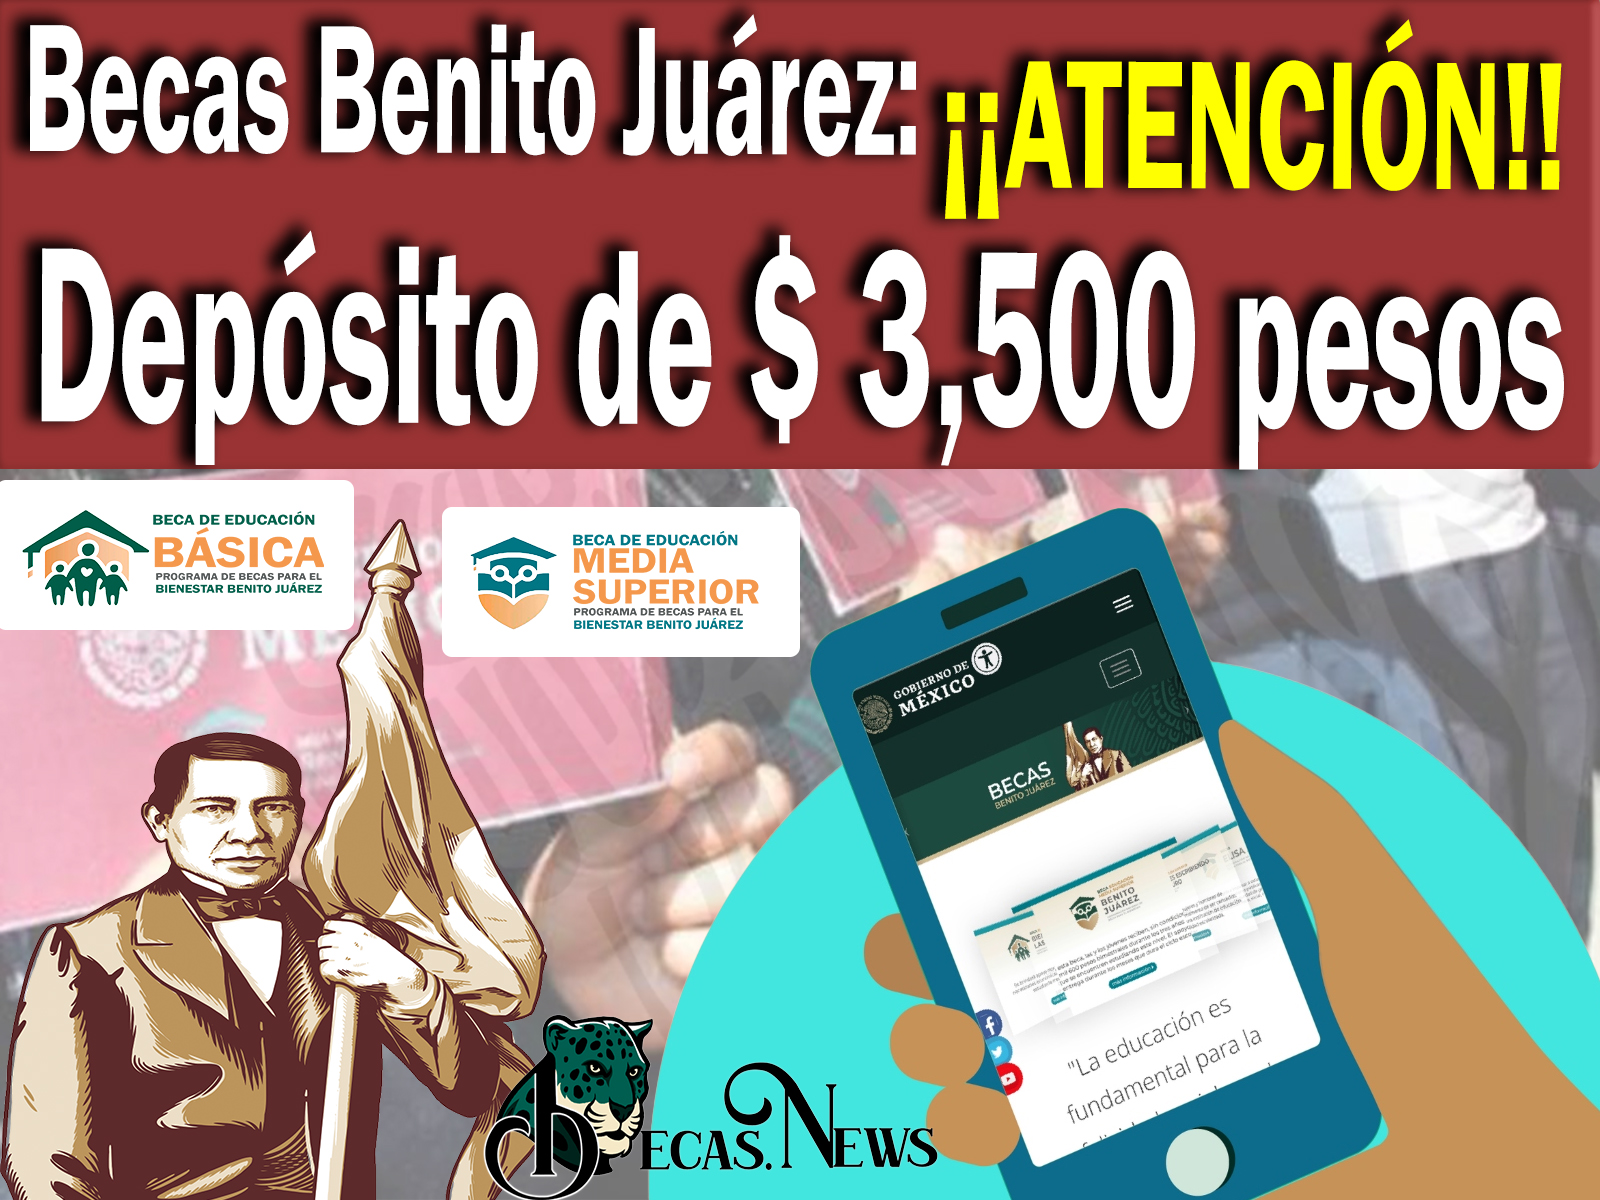 Atención becarios del programa becas Benito Juárez depósito de $ 3,500 pesos